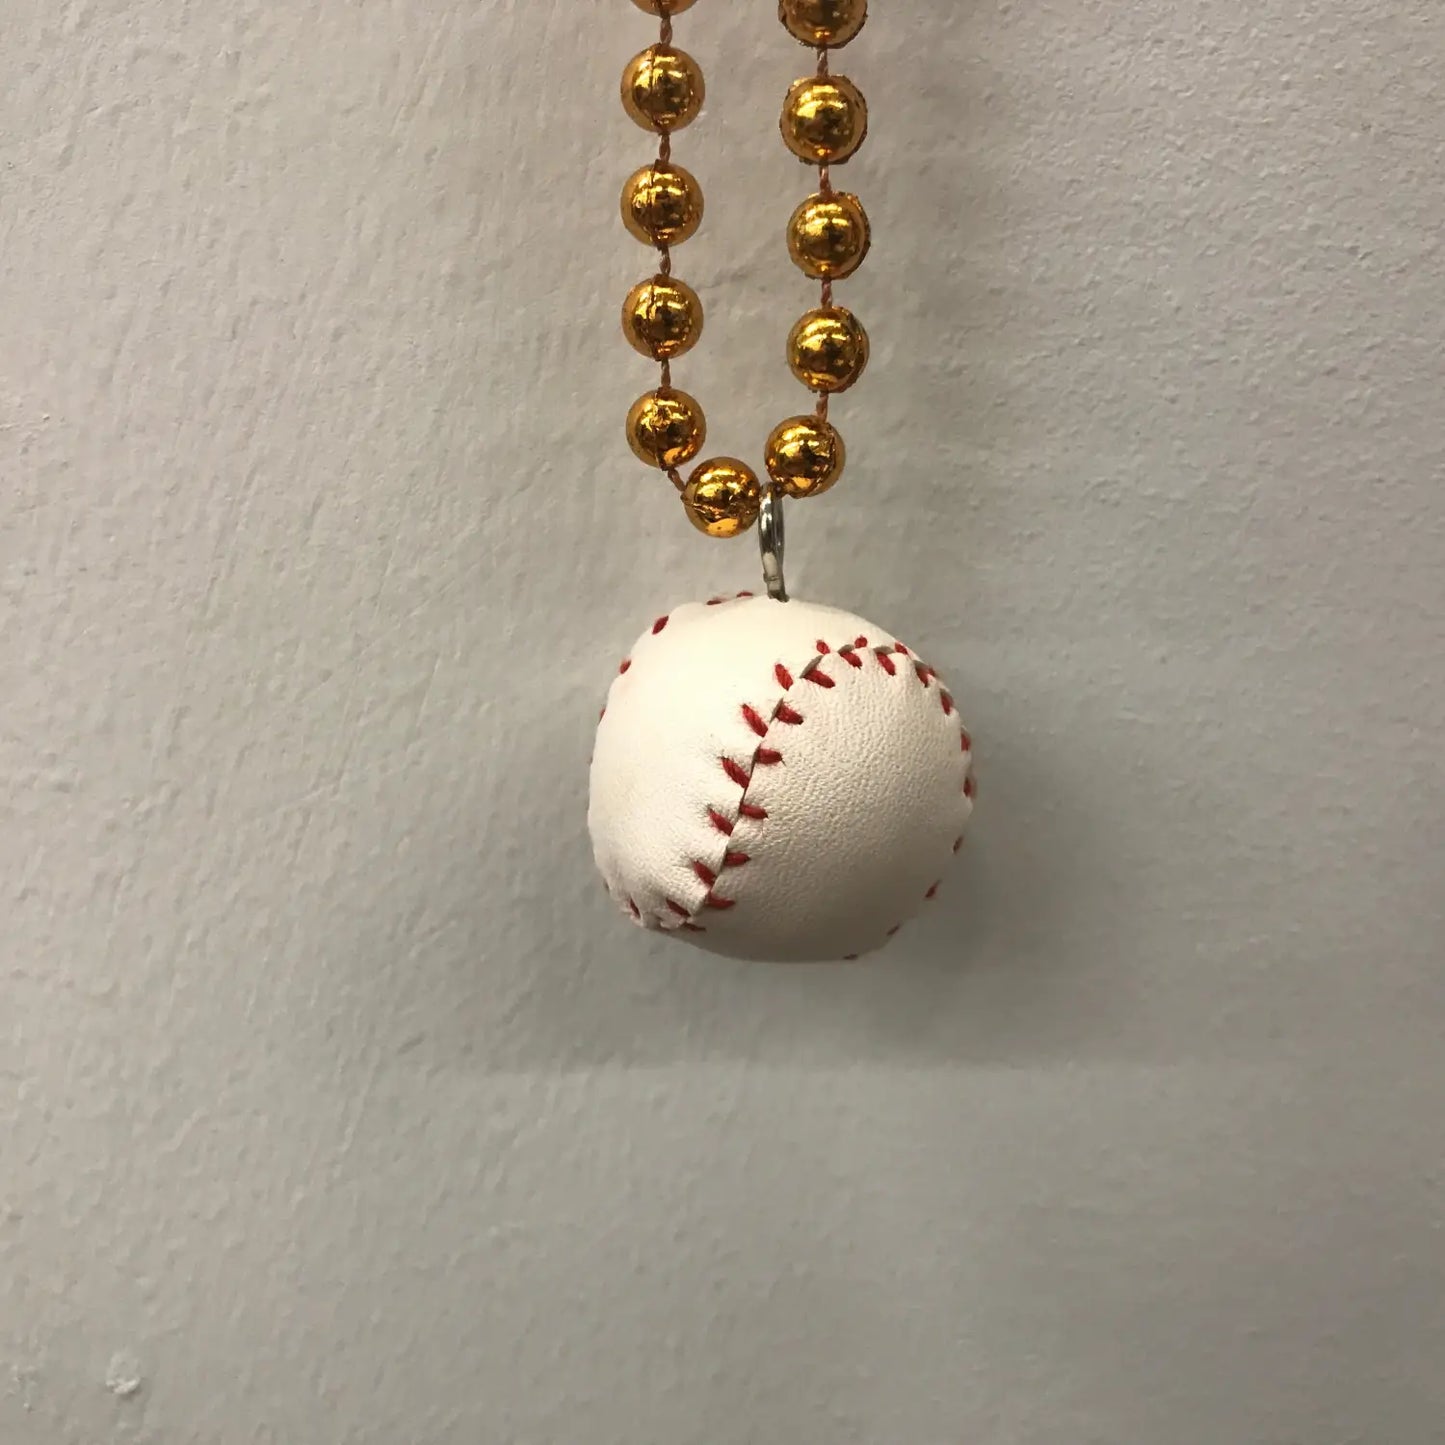 Baltimore Orioles Novelty Necklace - Baseball